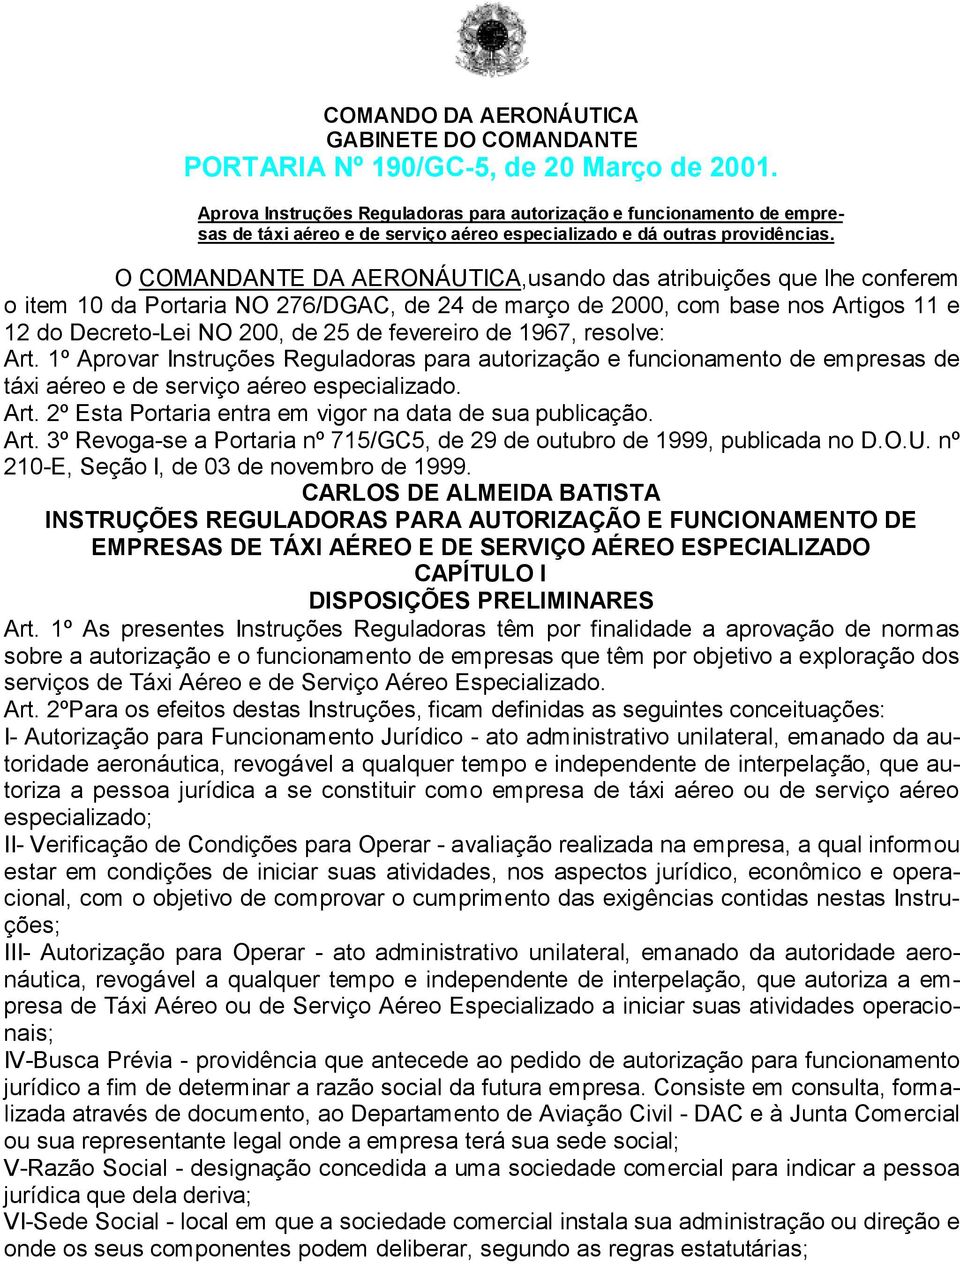 O COMANDANTE DA AERONÁUTICA,usando das atribuições que lhe conferem o item 10 da Portaria NO 276/DGAC, de 24 de março de 2000, com base nos Artigos 11 e 12 do Decreto-Lei NO 200, de 25 de fevereiro